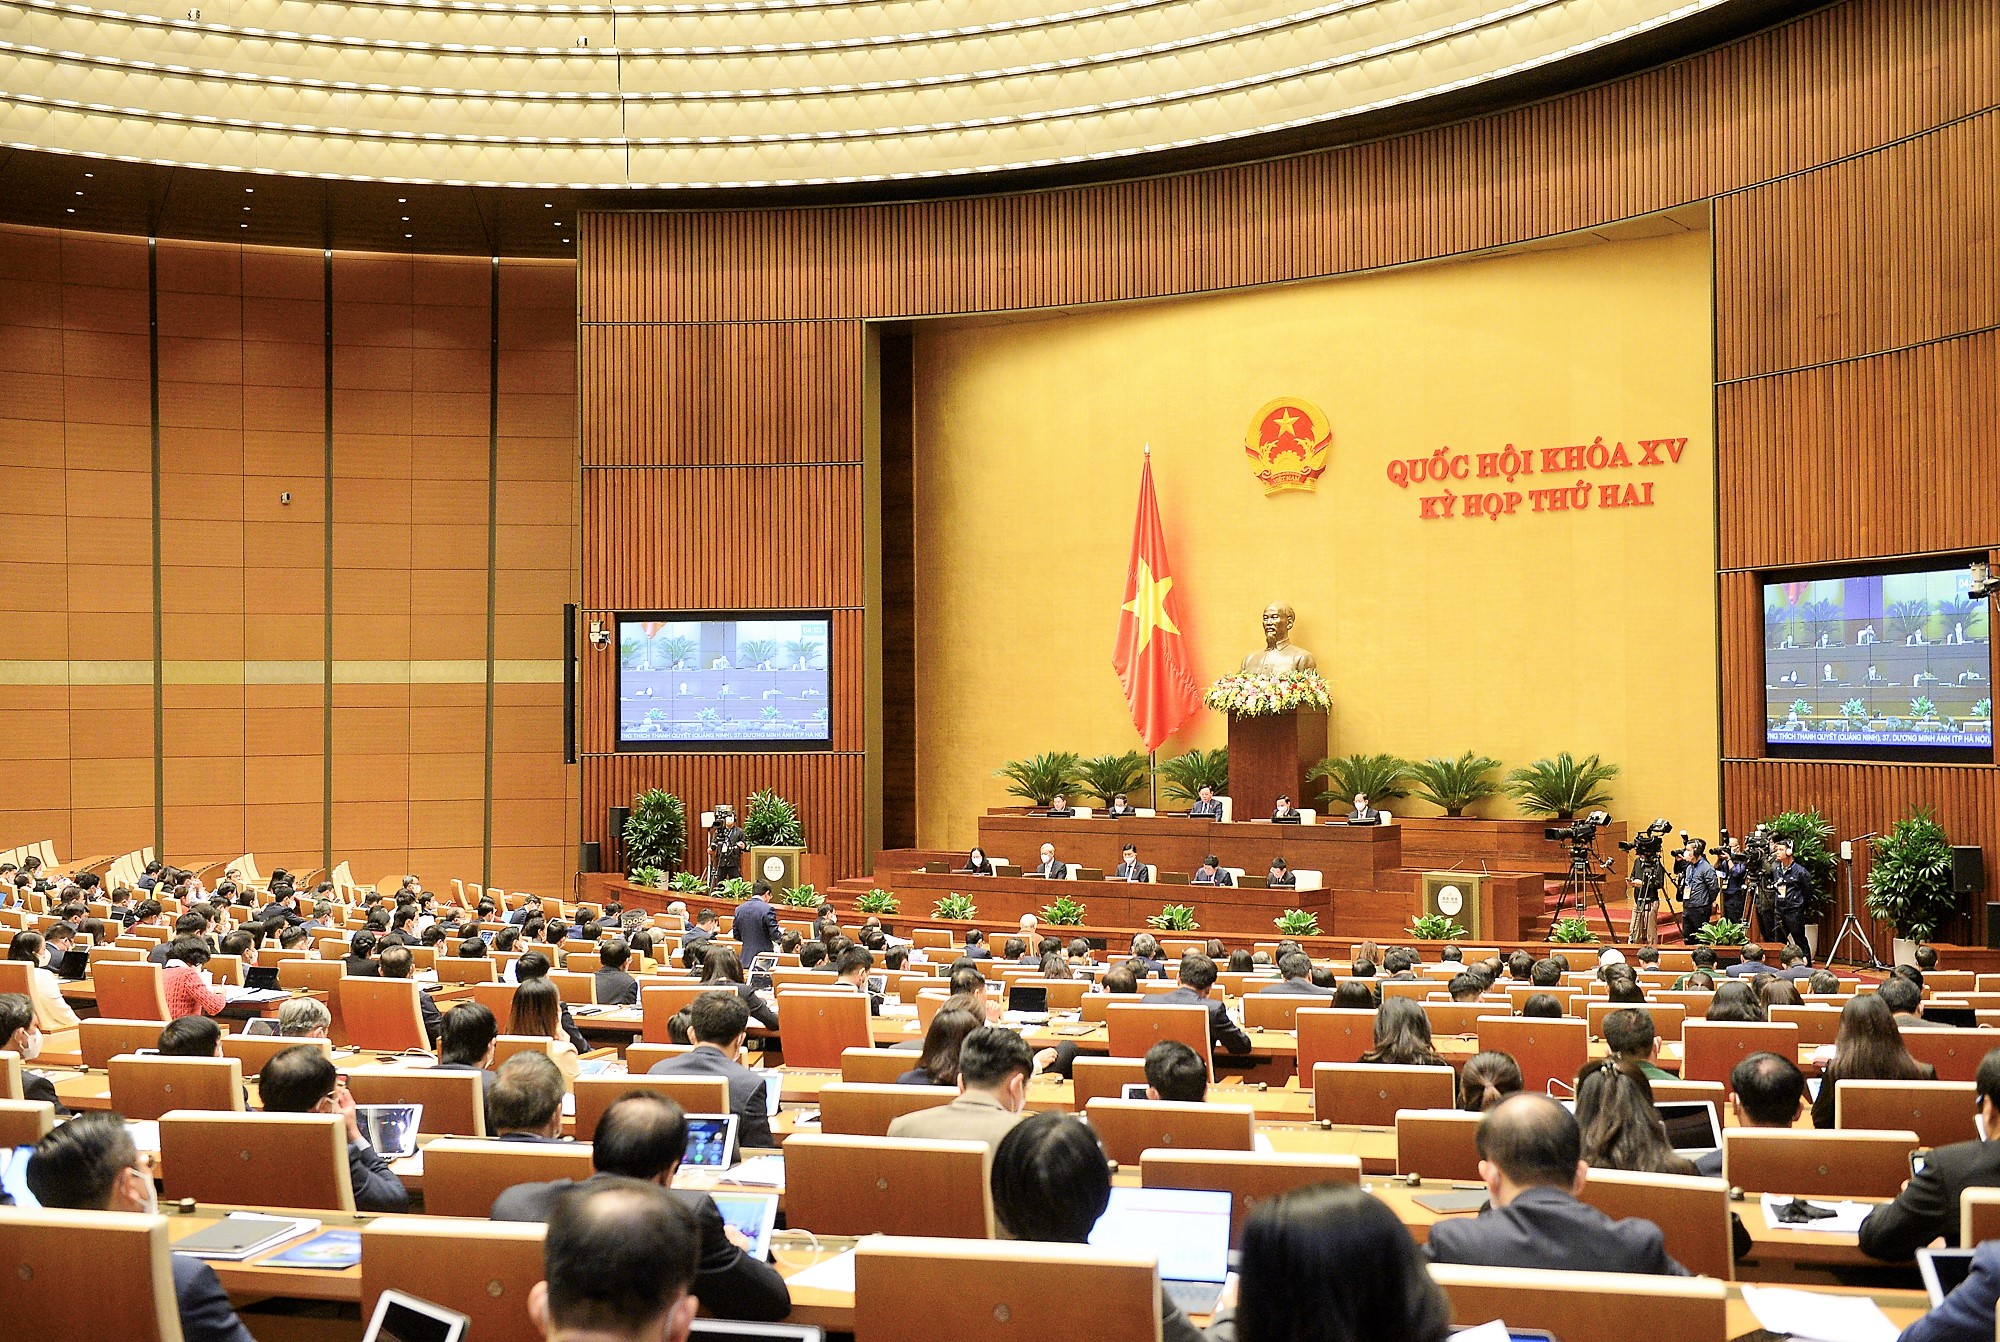 Ngày 10/11, Quốc hội tiến hành chất vấn và trả lời chất vấn đối với Bộ trưởng Bộ Y tế Nguyễn Thanh Long